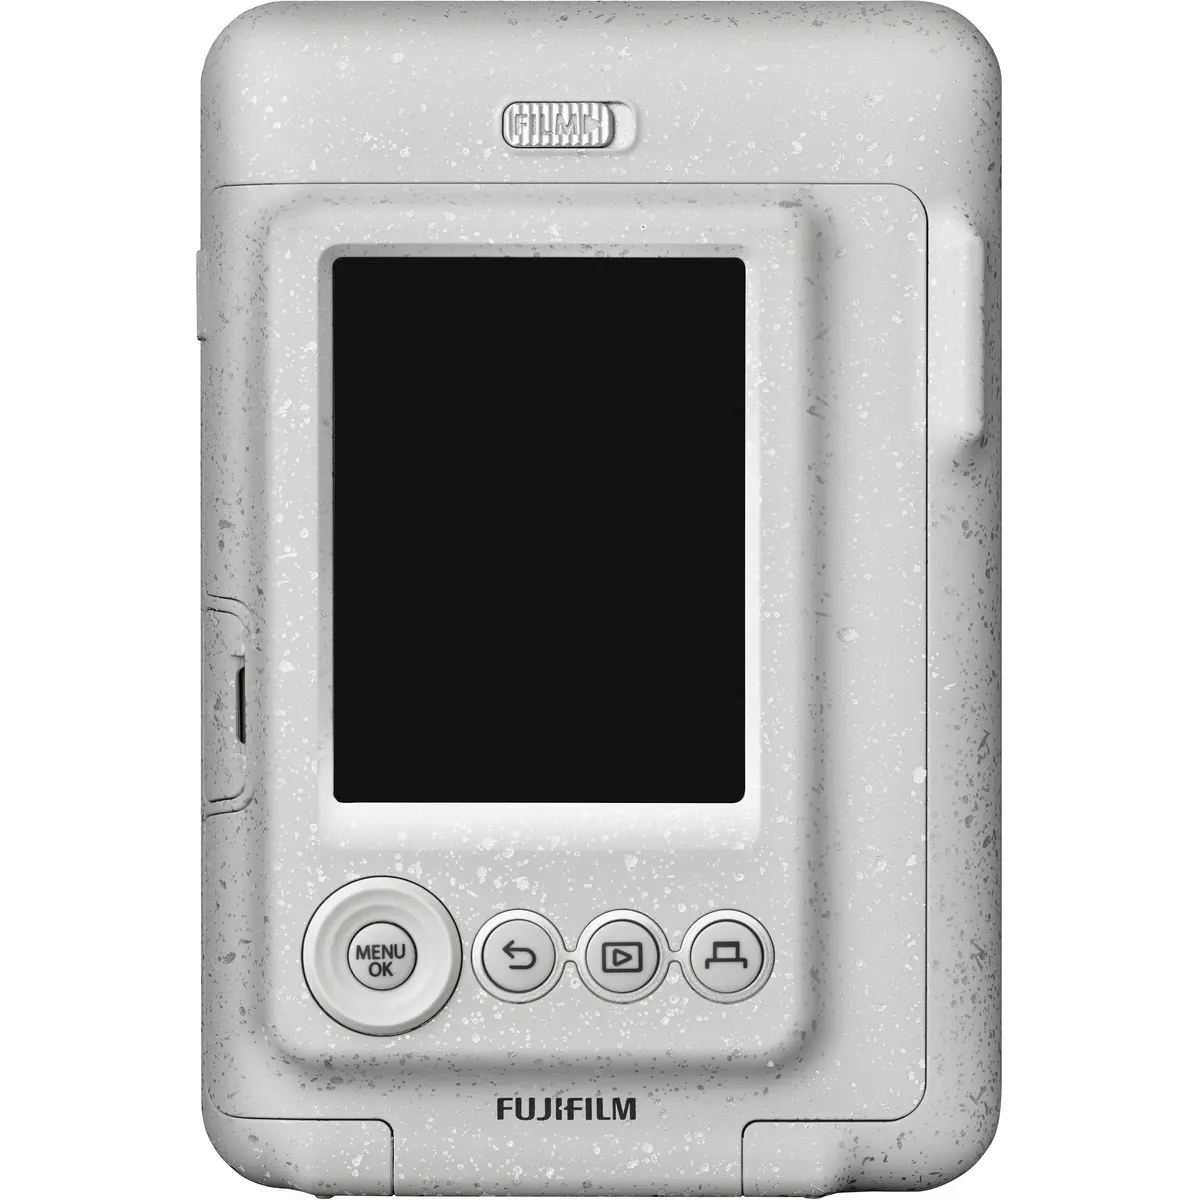 3. Fujifilm instax mini LiPlay (White)